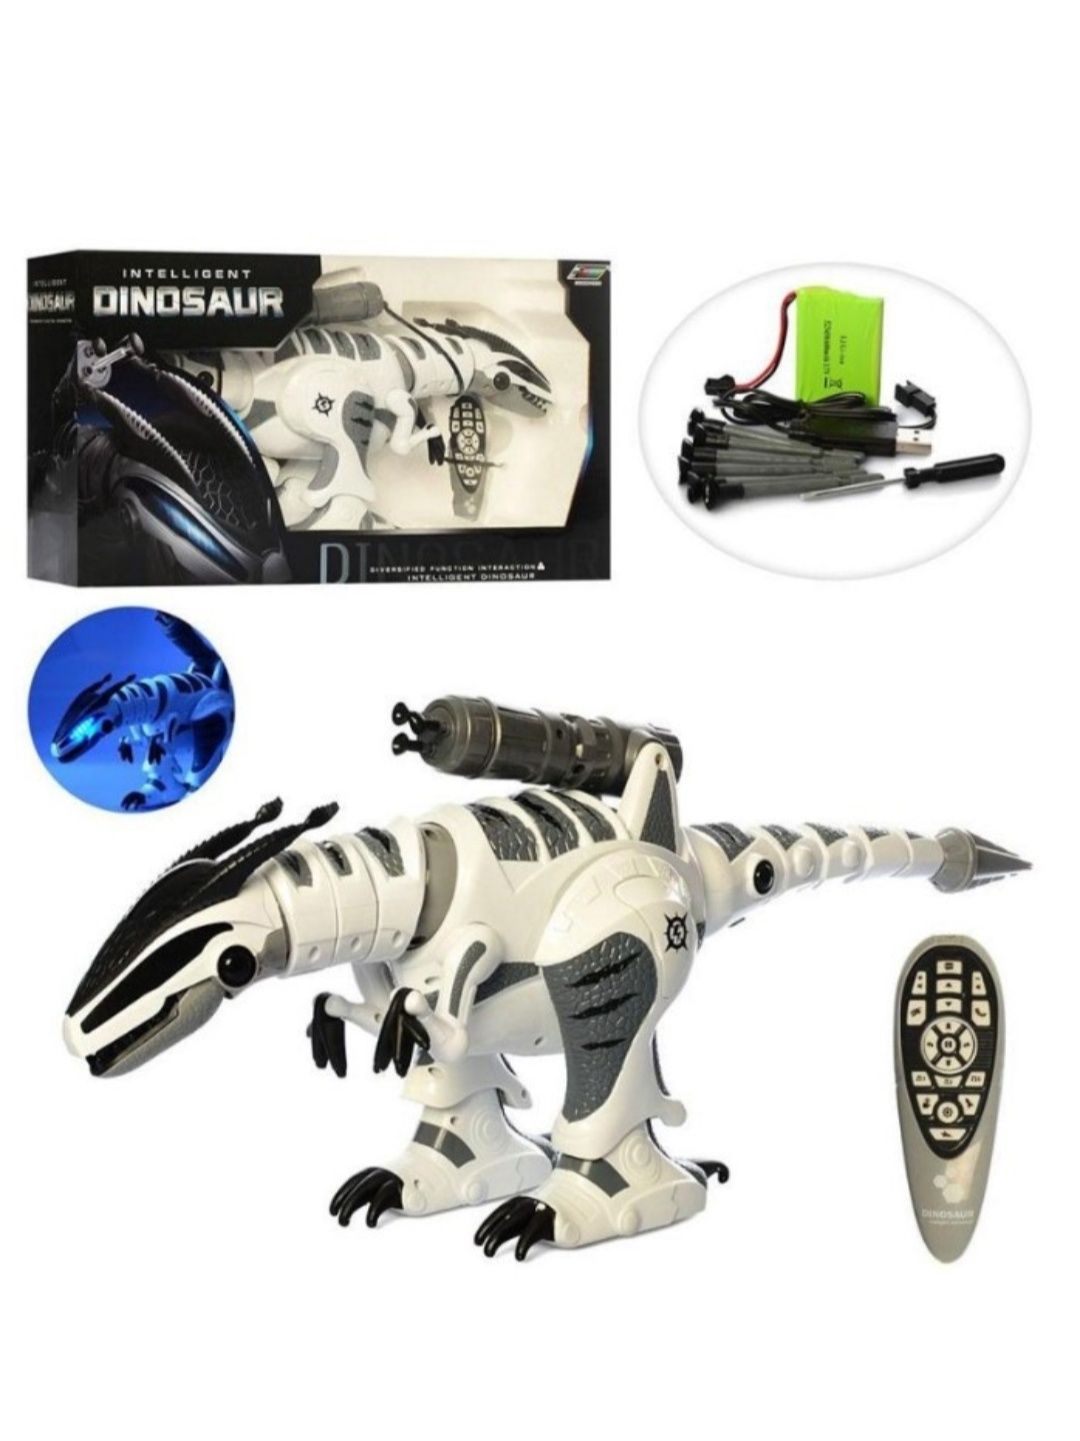 Інтерактивний Динозавр G11 на радіокеруванні, сенсорне управління